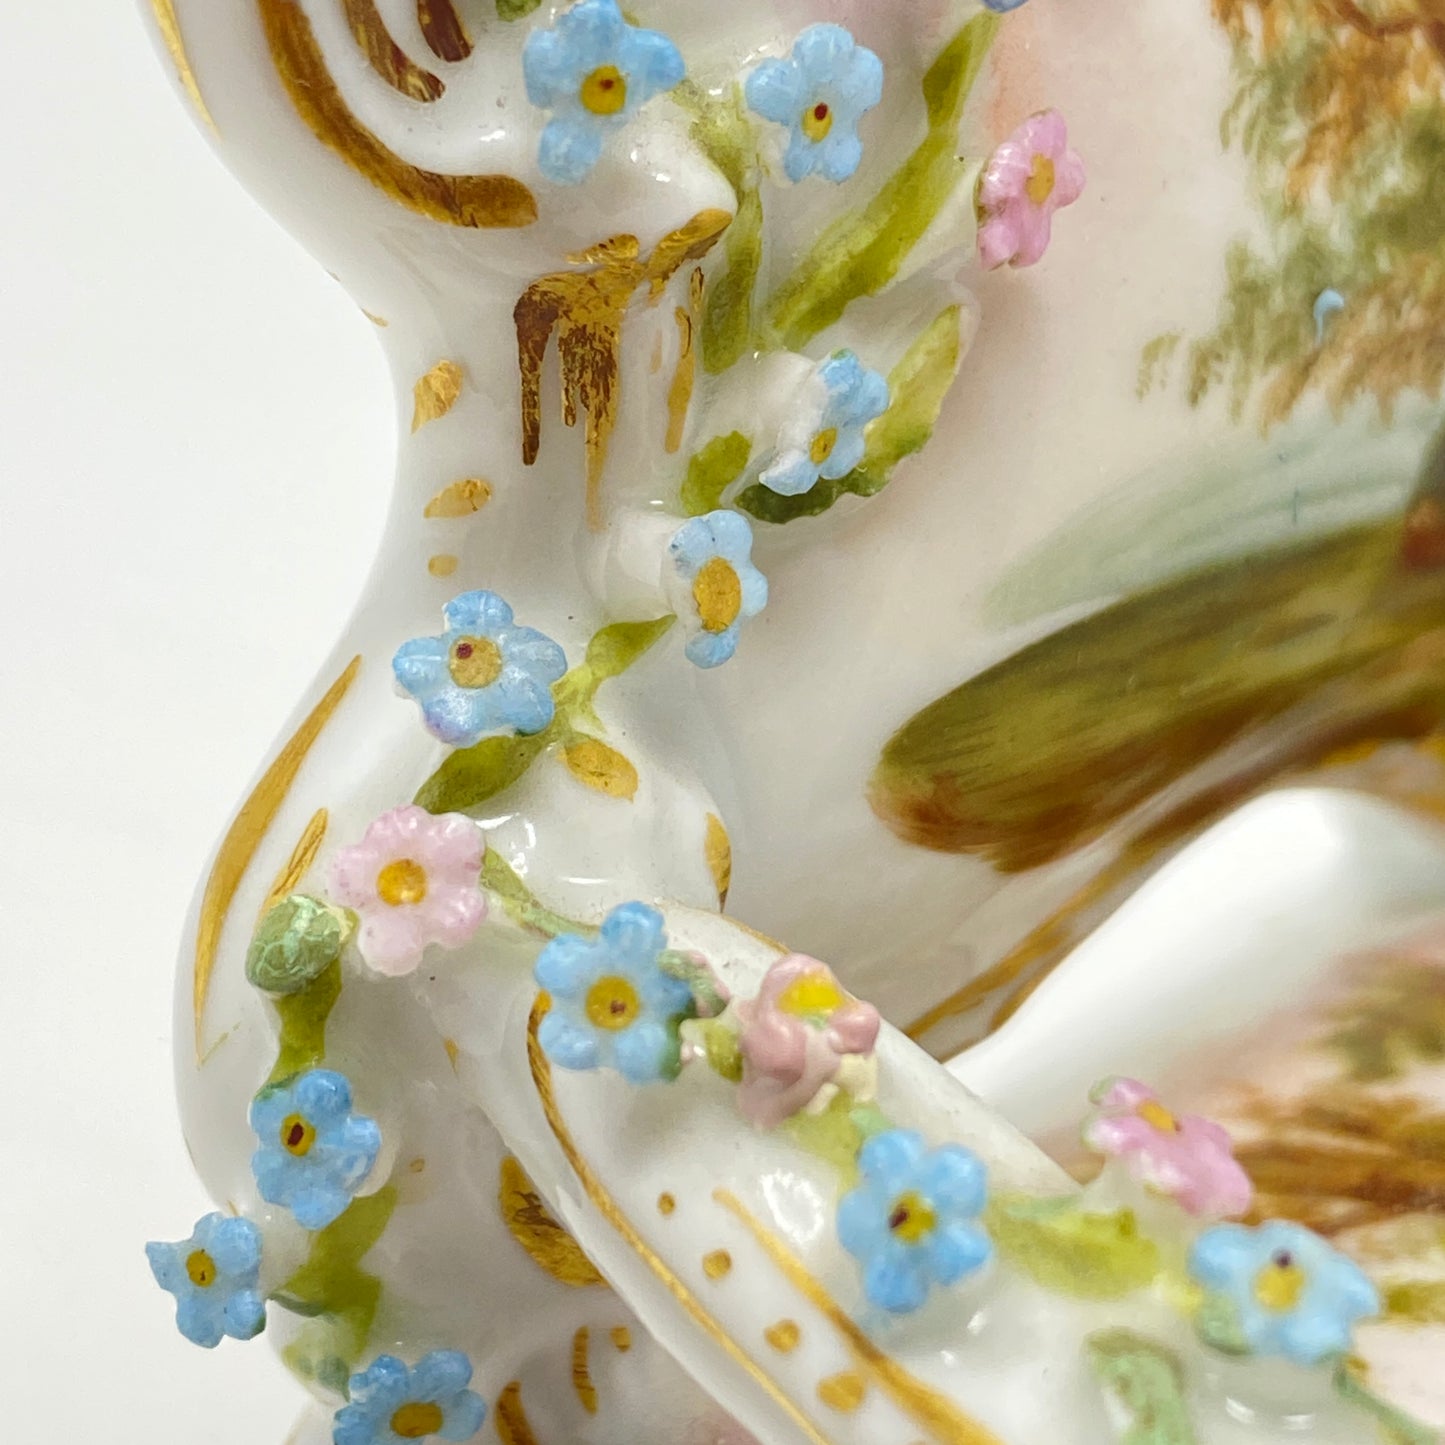 Dornheim, Koch, & Fischer (DKF) Antique Hand Painted Porcelain Miniature Settee